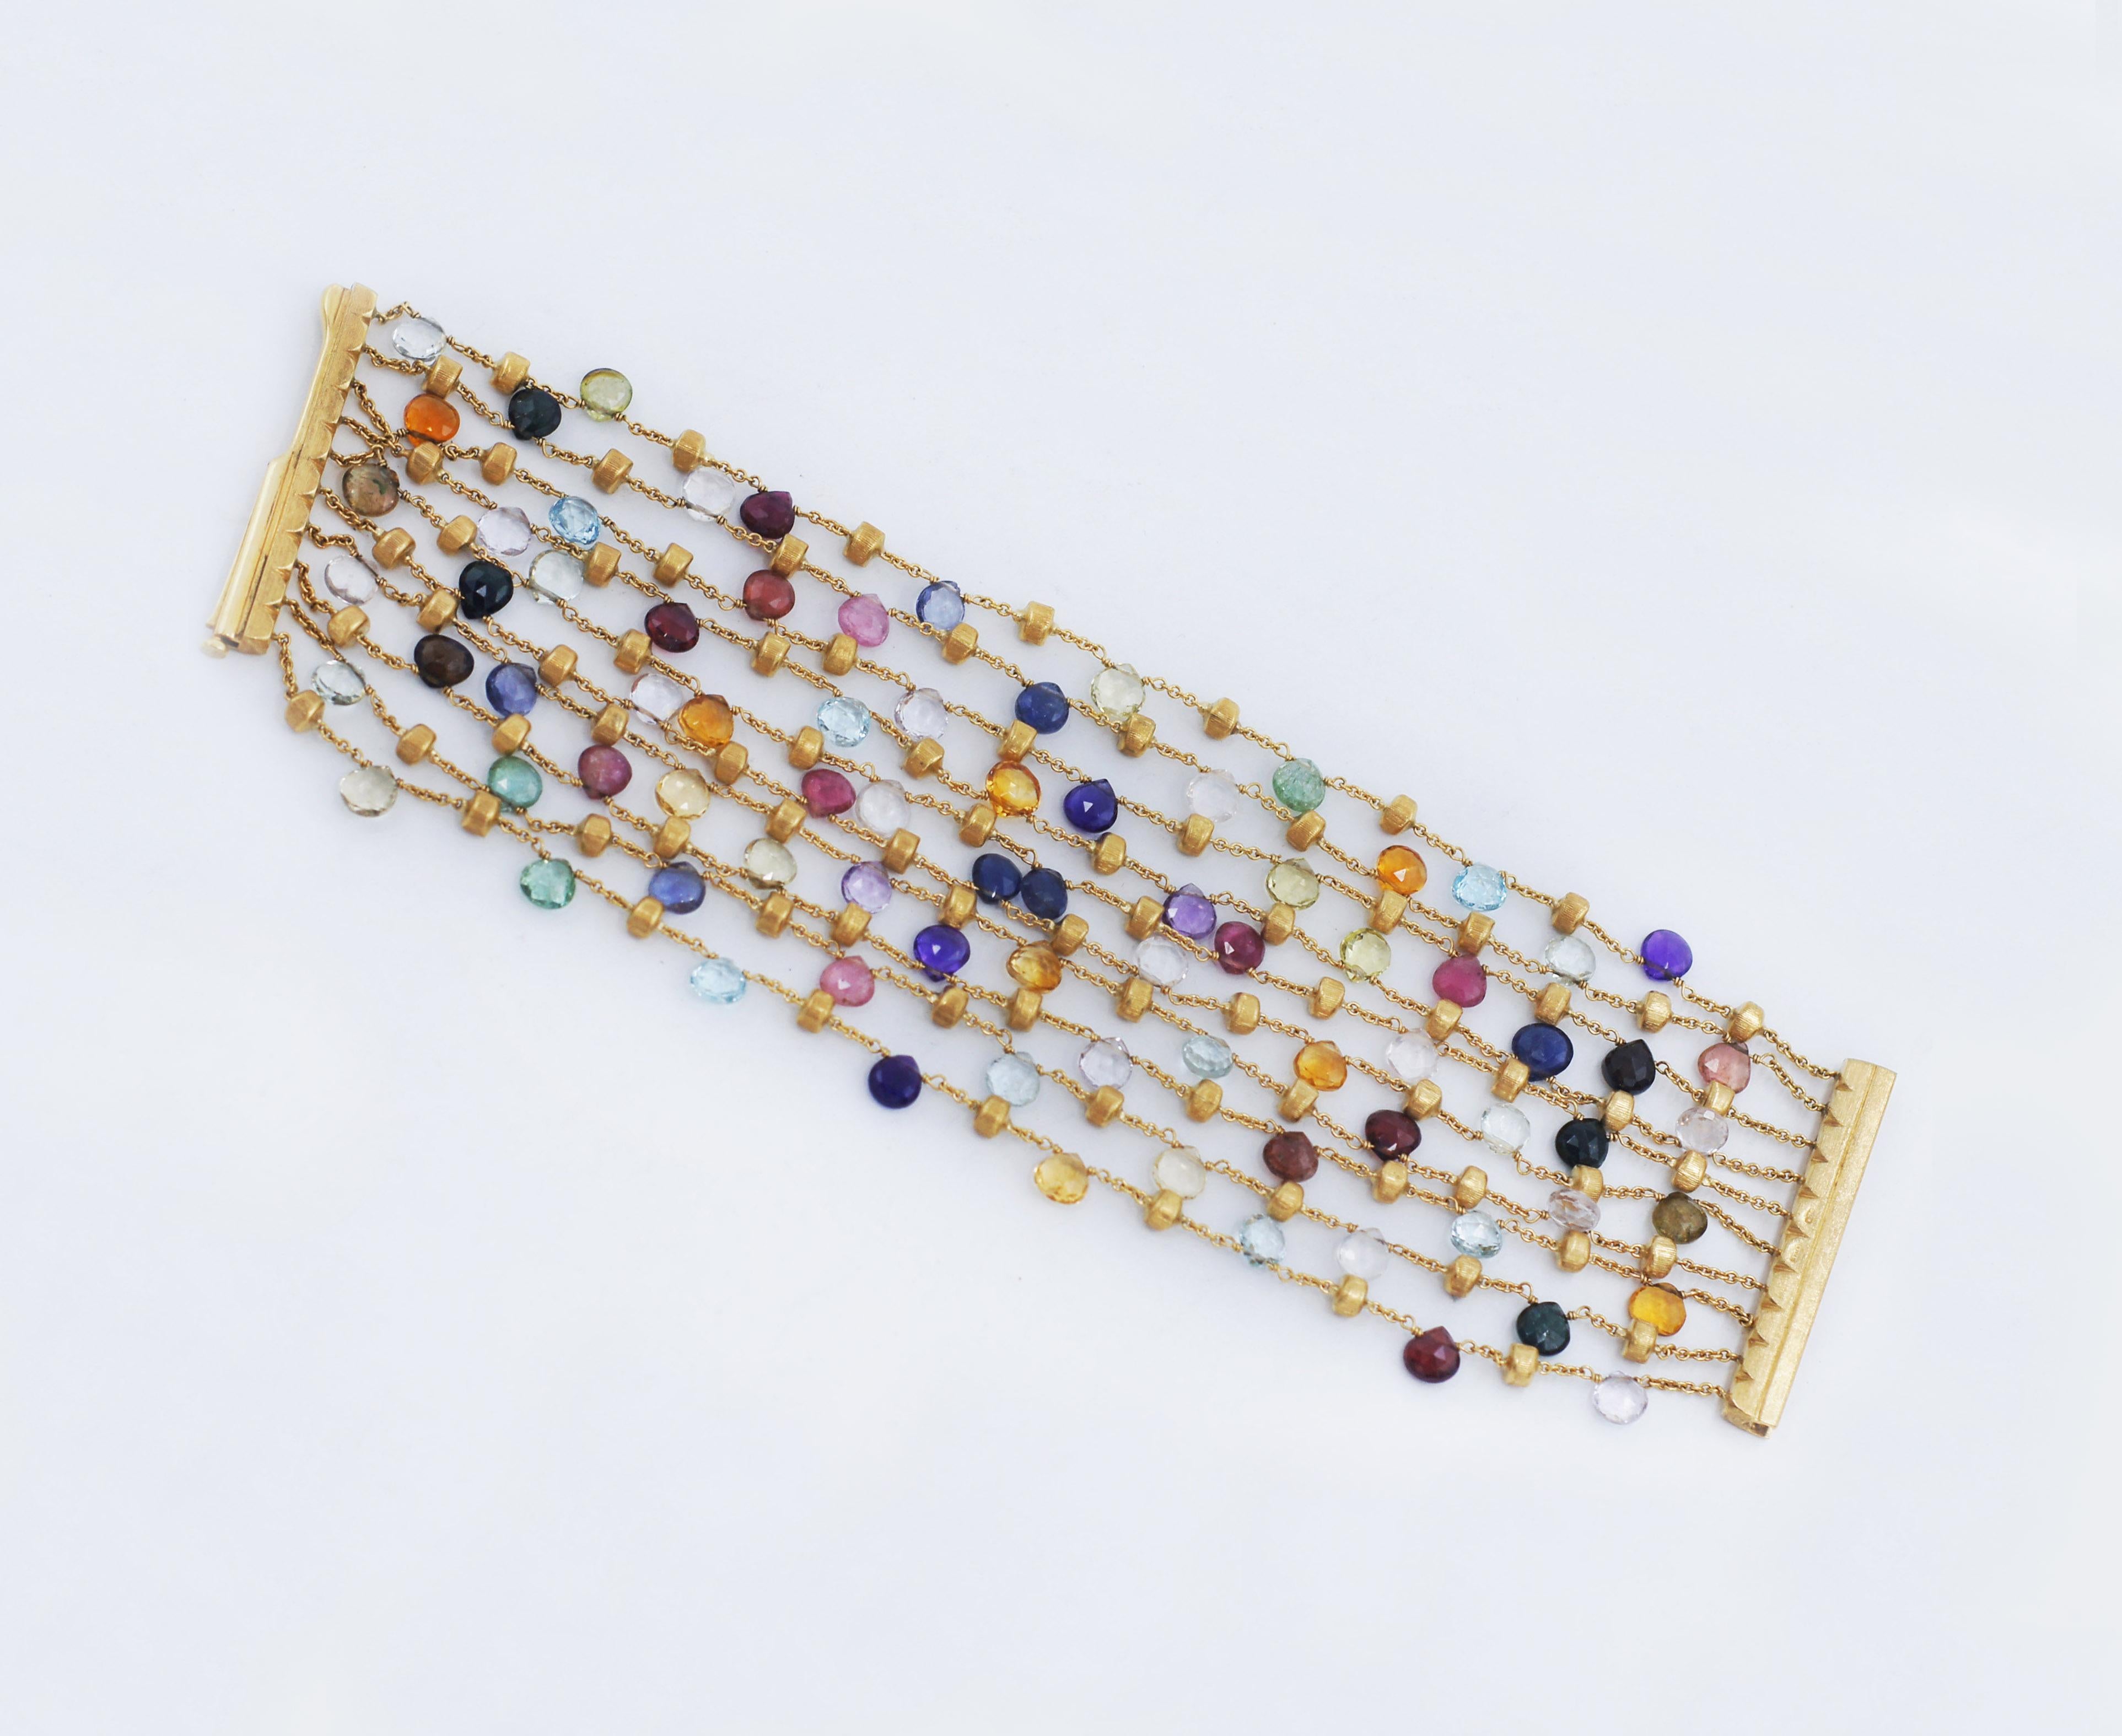 MARCO BICEGO 
Collection S S 
Pierres précieuses multicolores 
Bracelet 10 brins avec pierres semi-précieuses mixtes
Or jaune 18k 
Longueur : 7.25